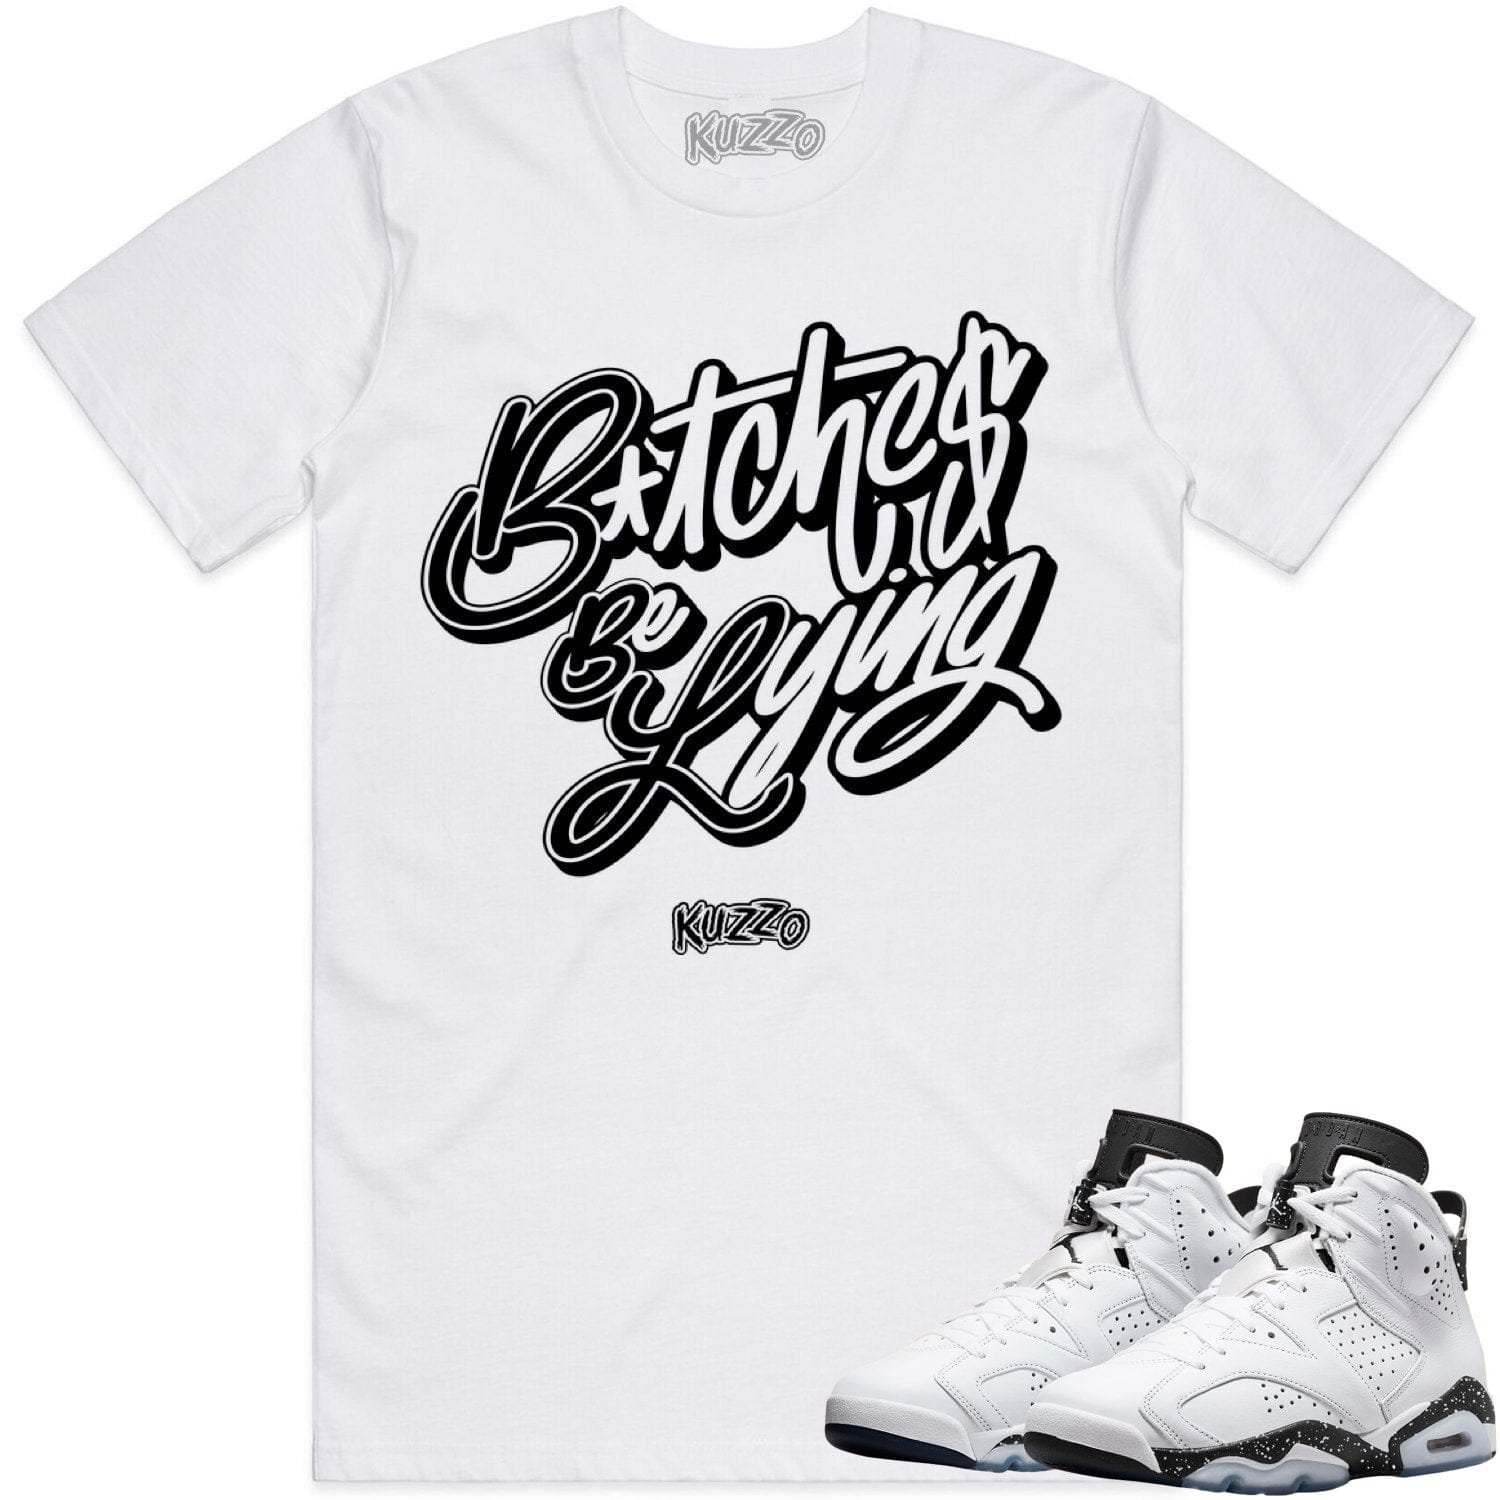 Reverse Oreo 6s Shirt - Jordan 6 Reverse Oreo Sneaker Tees - BBL